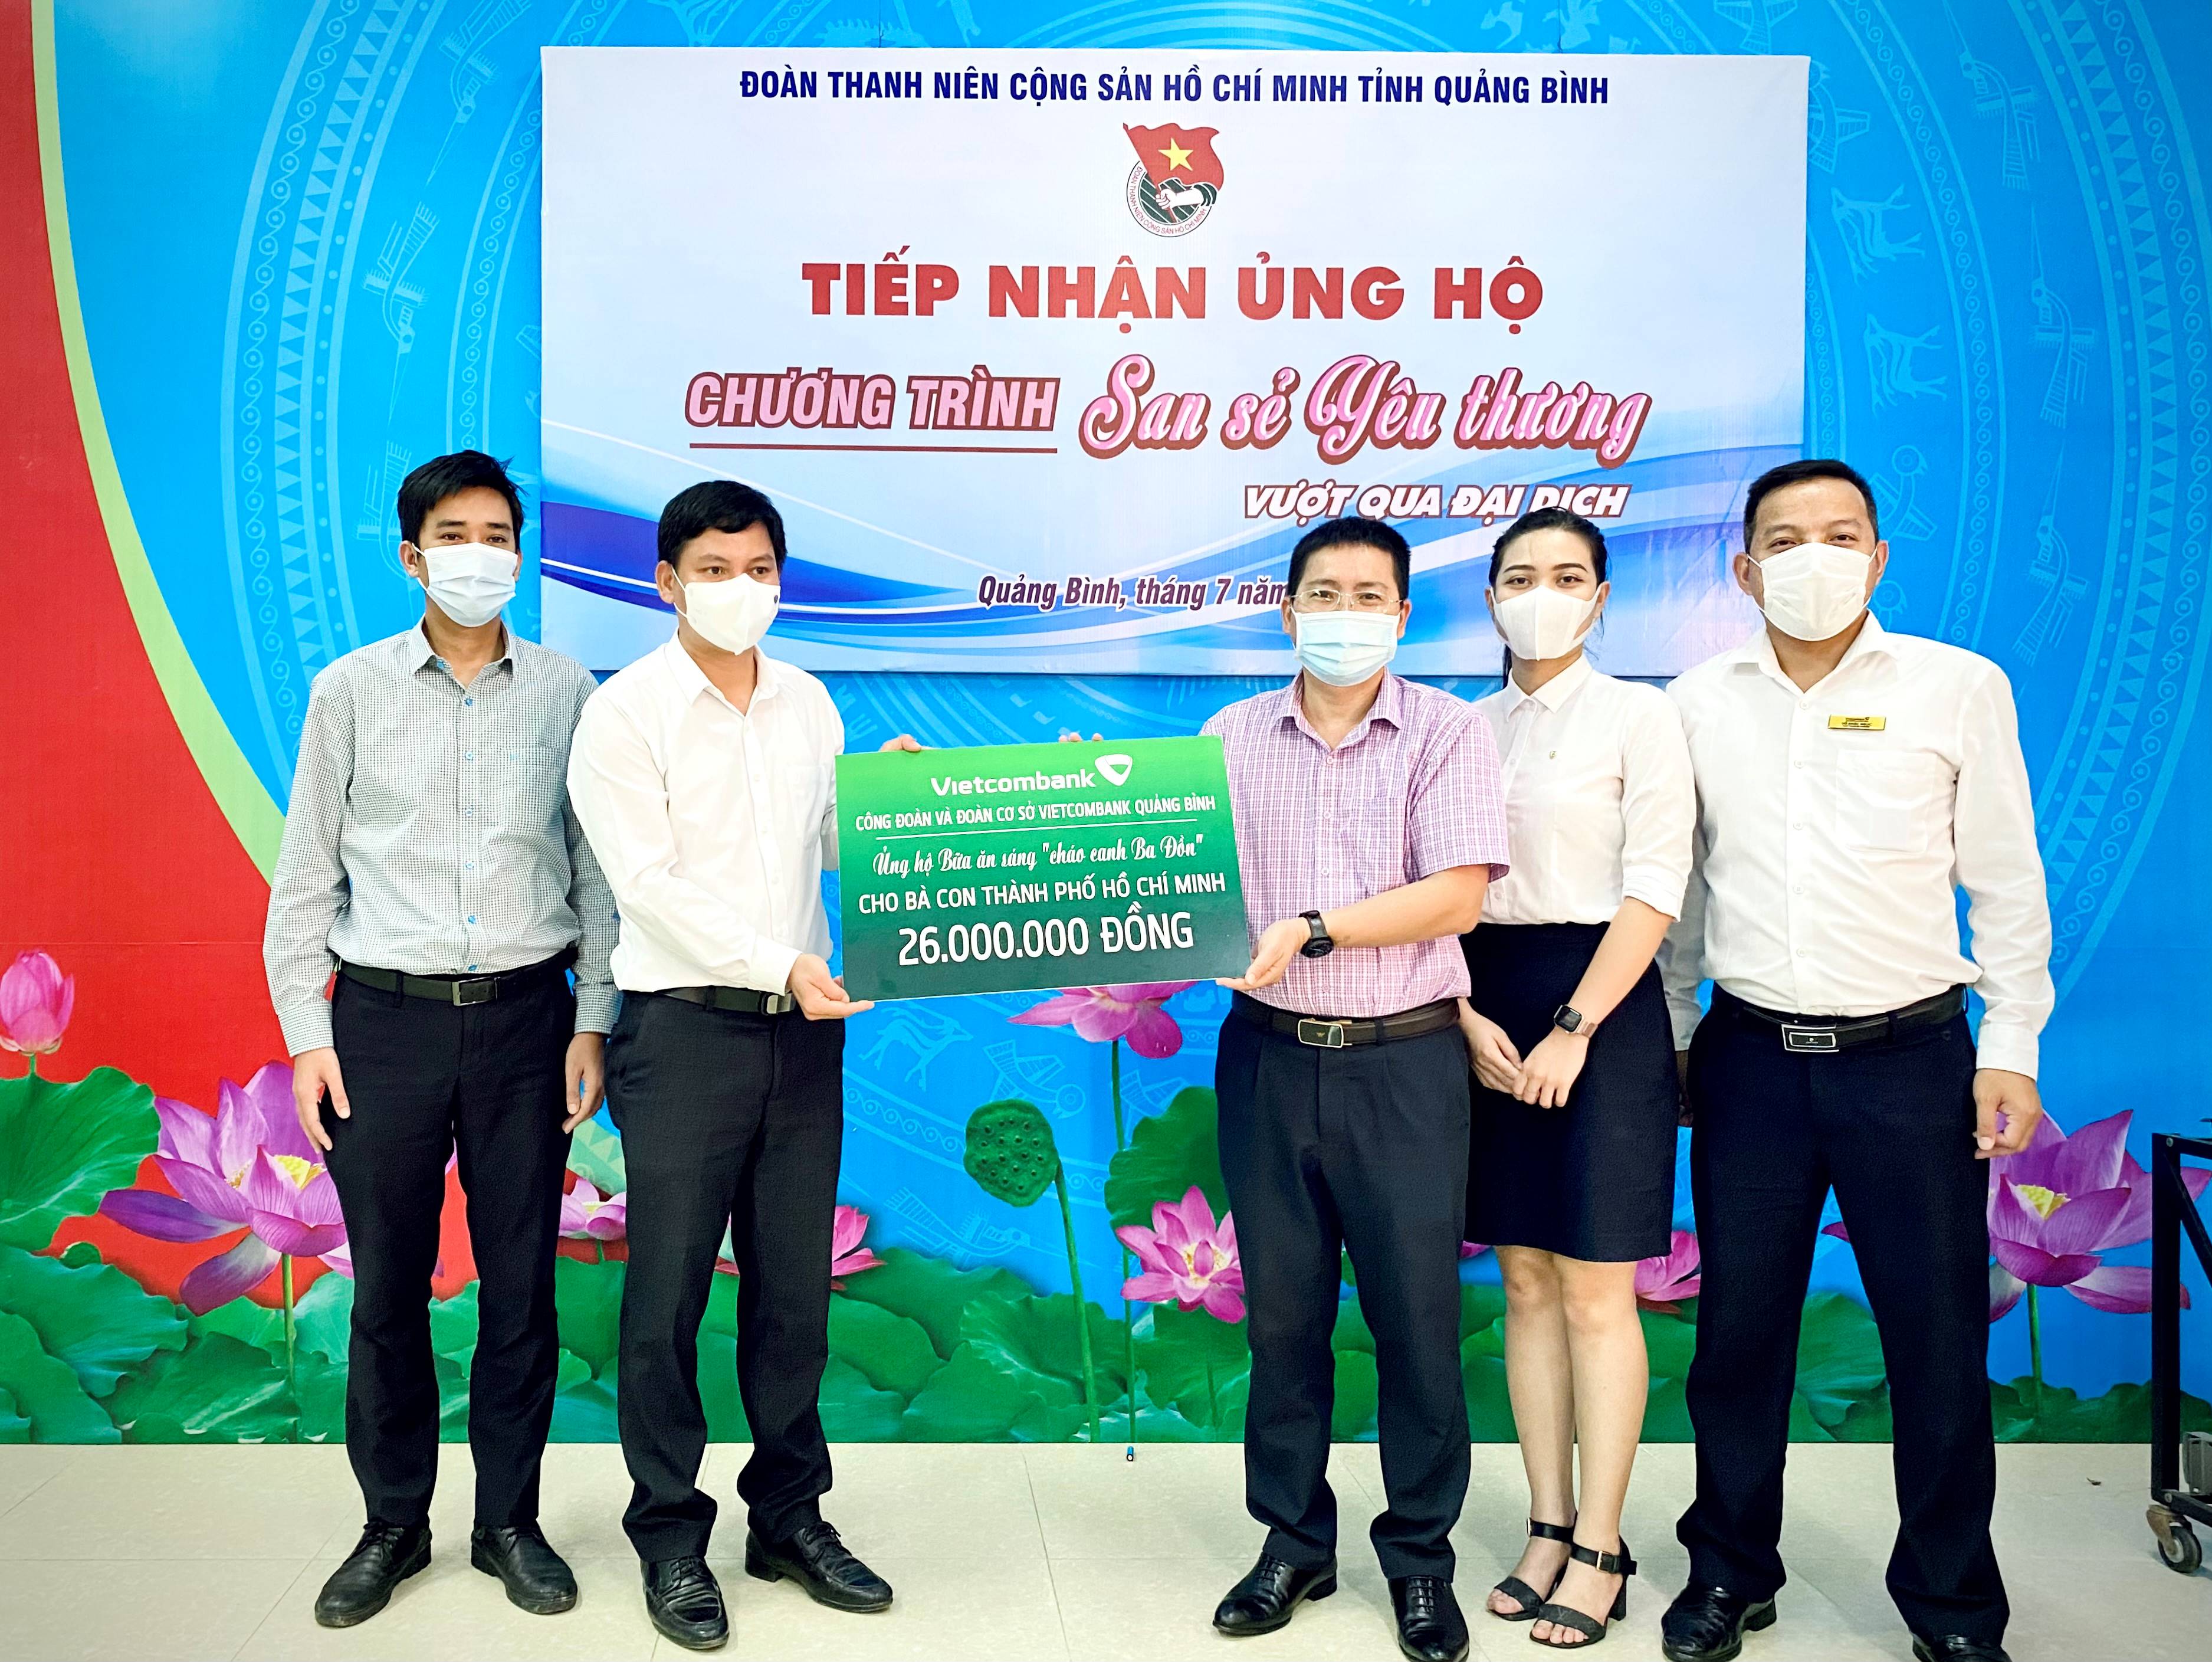 Công đoàn và Đoàn cơ sở Vietcombank Quảng Bình ủng hộ 26 triệu đồng cho chương trình "Bữa ăn sáng Cháo canh Ba Đồn cho bà con Thành phố Hồ Chí Minh"